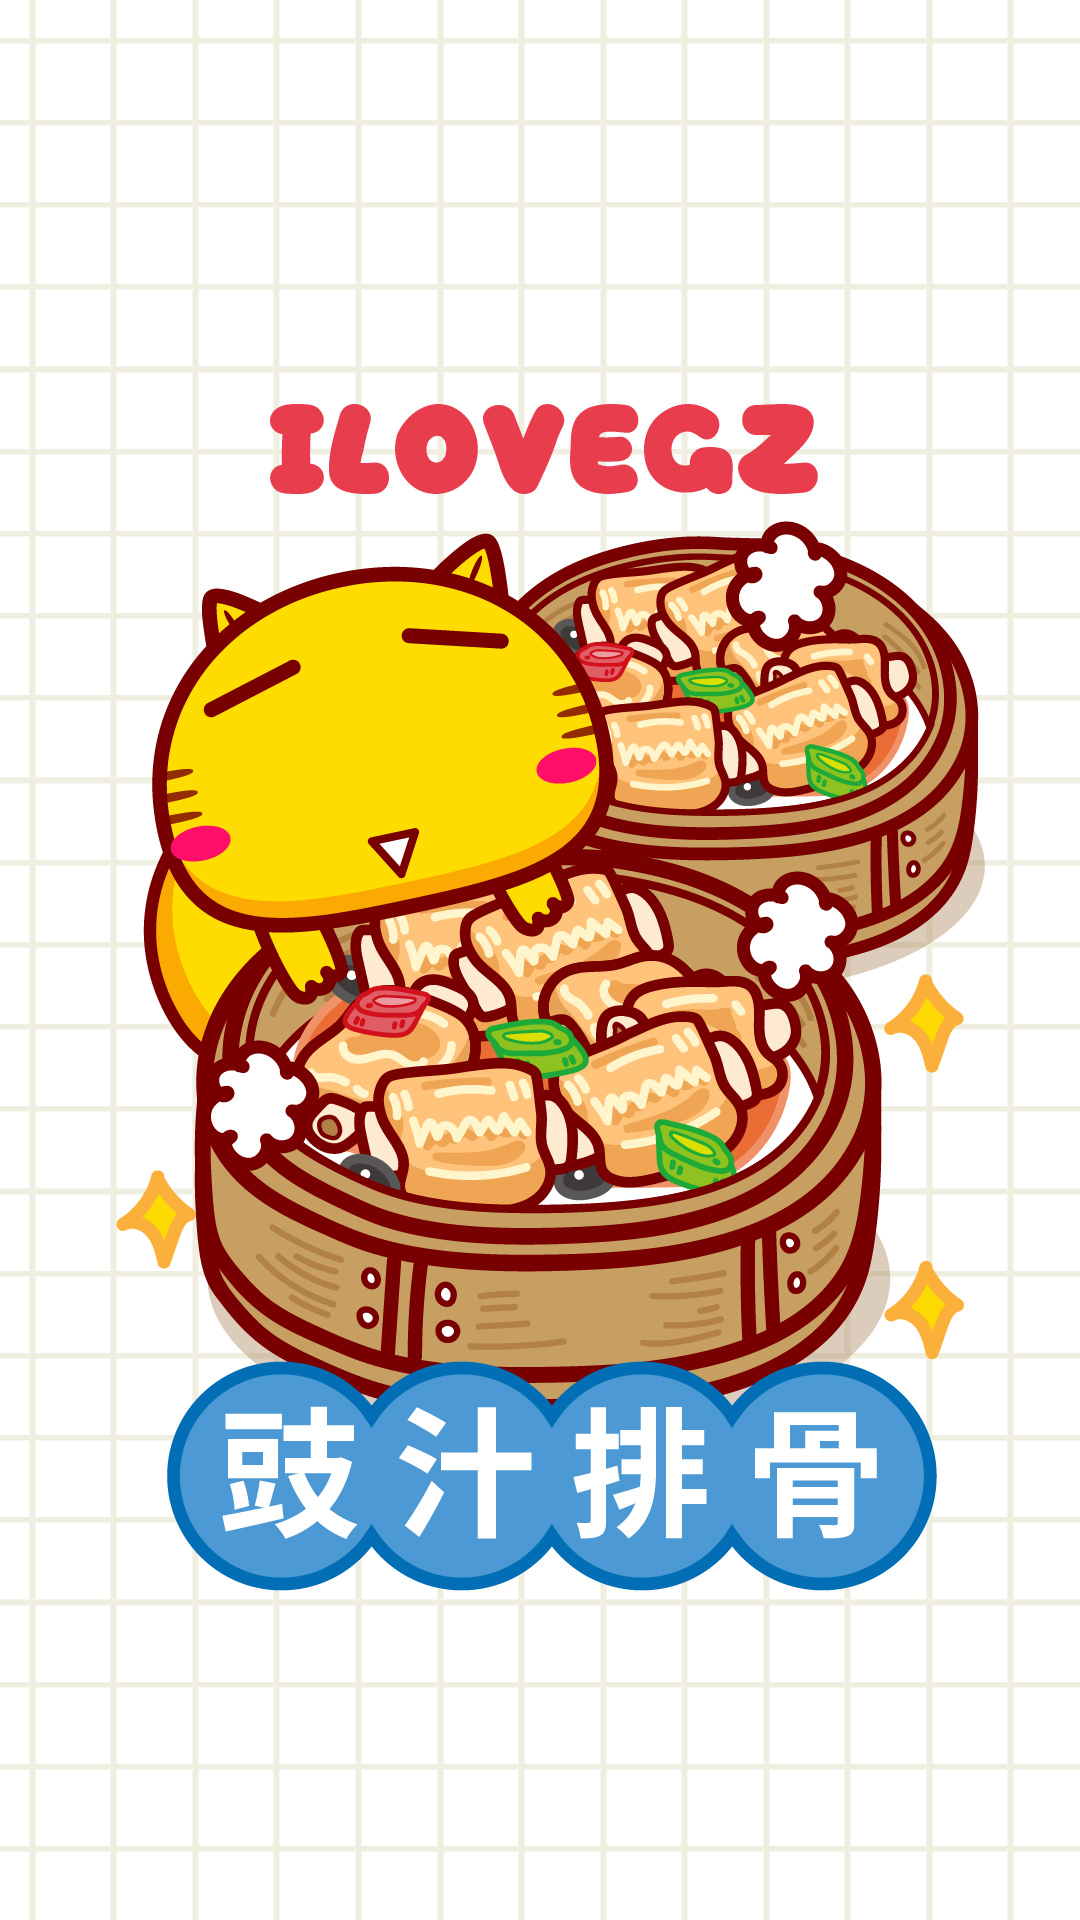 哈咪猫爱广州美食